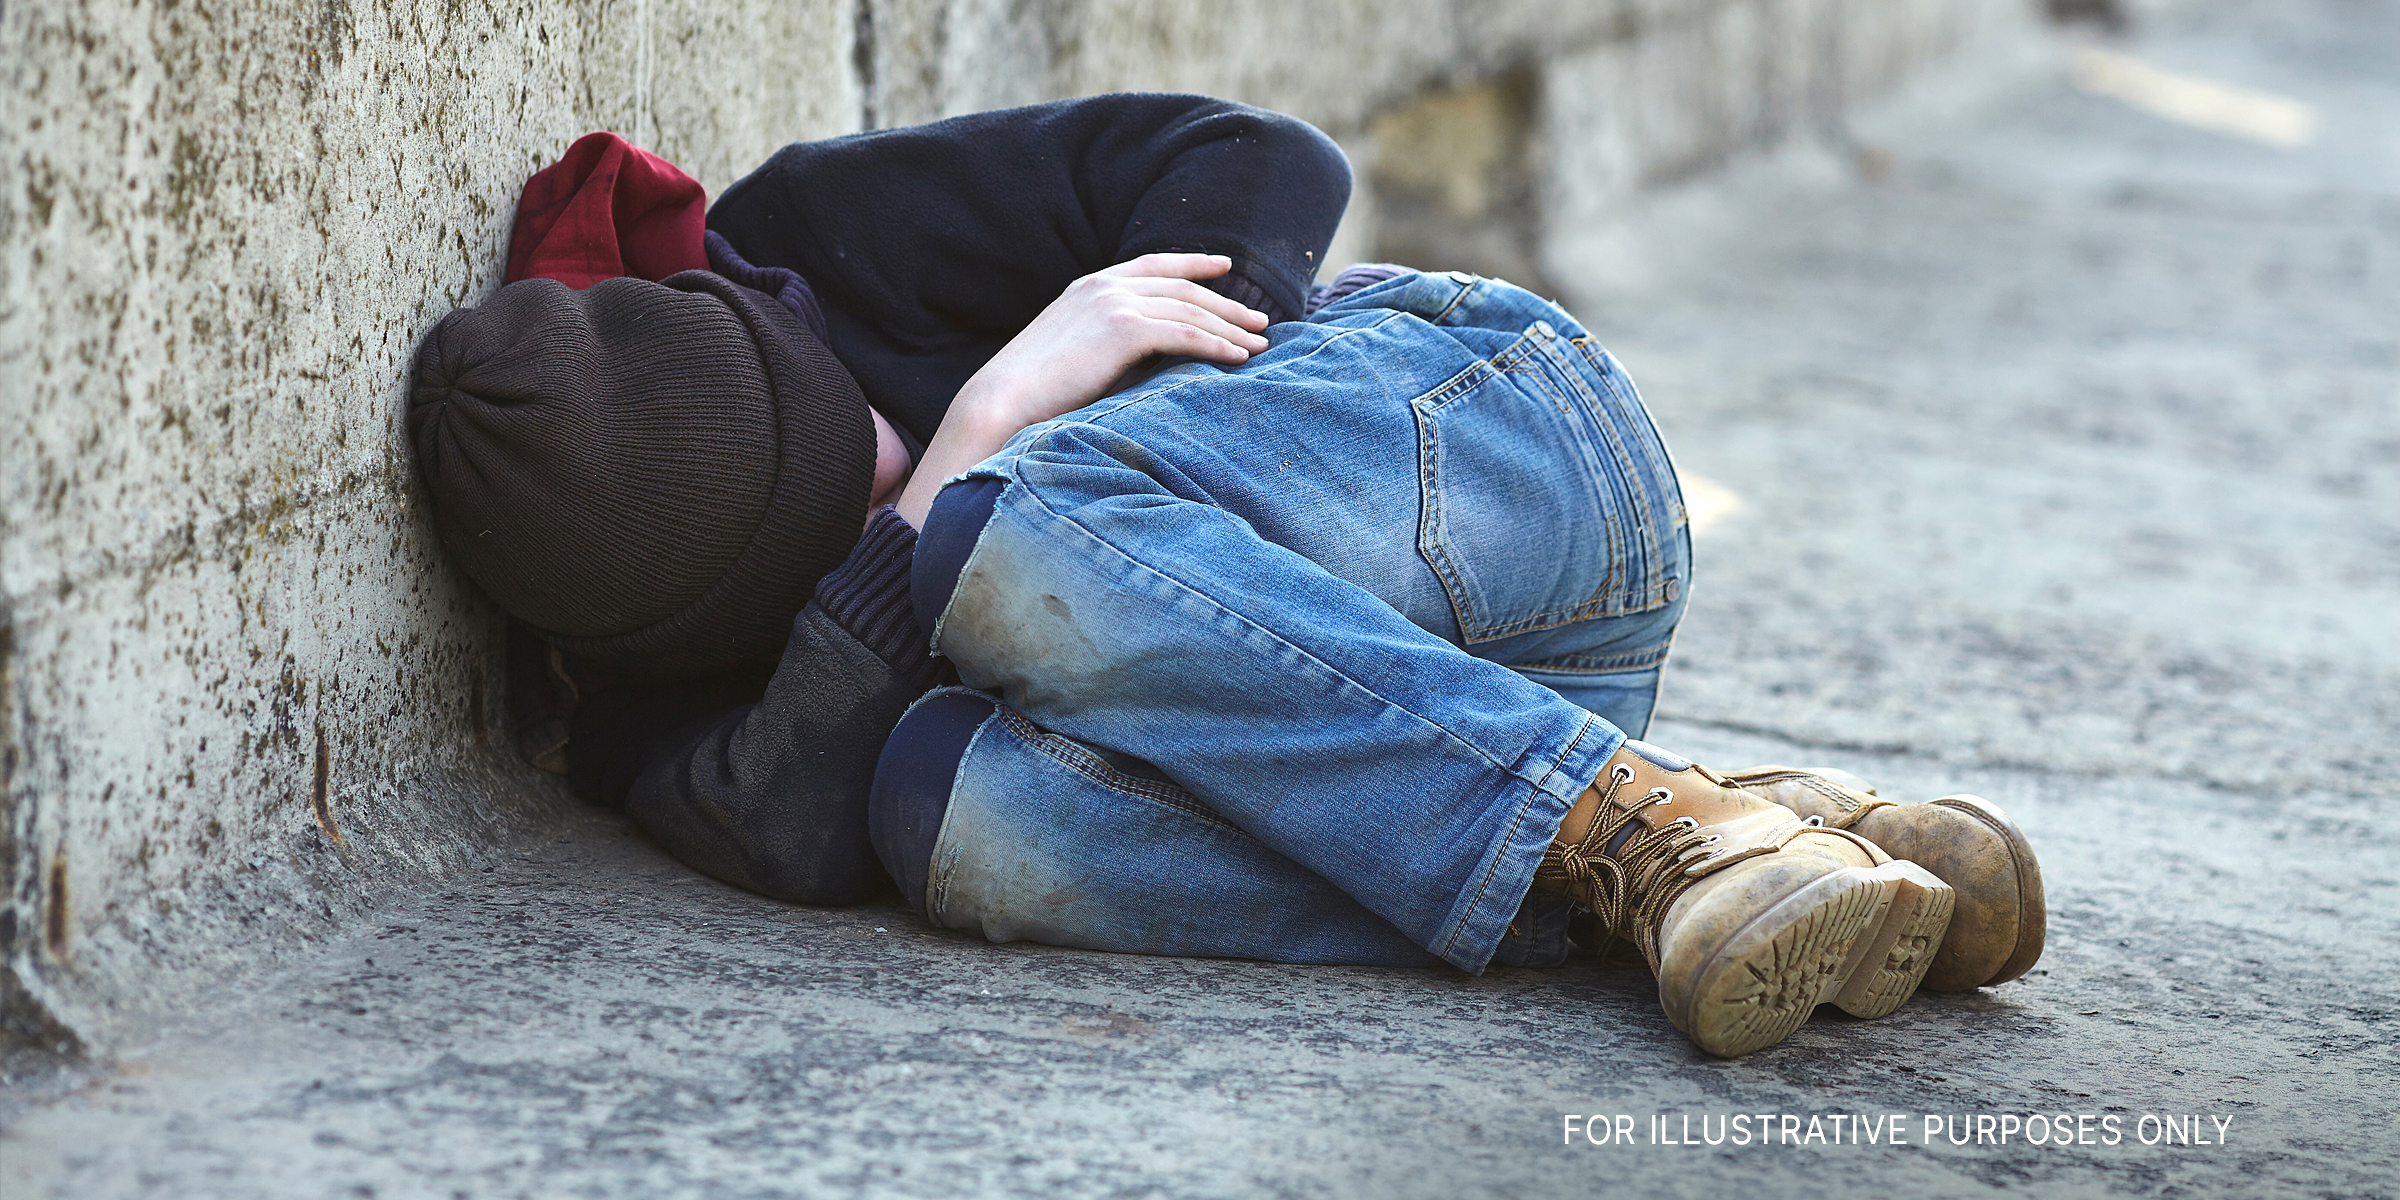 A young homeless boy sleeping on a bridge | Source: Shutterstock